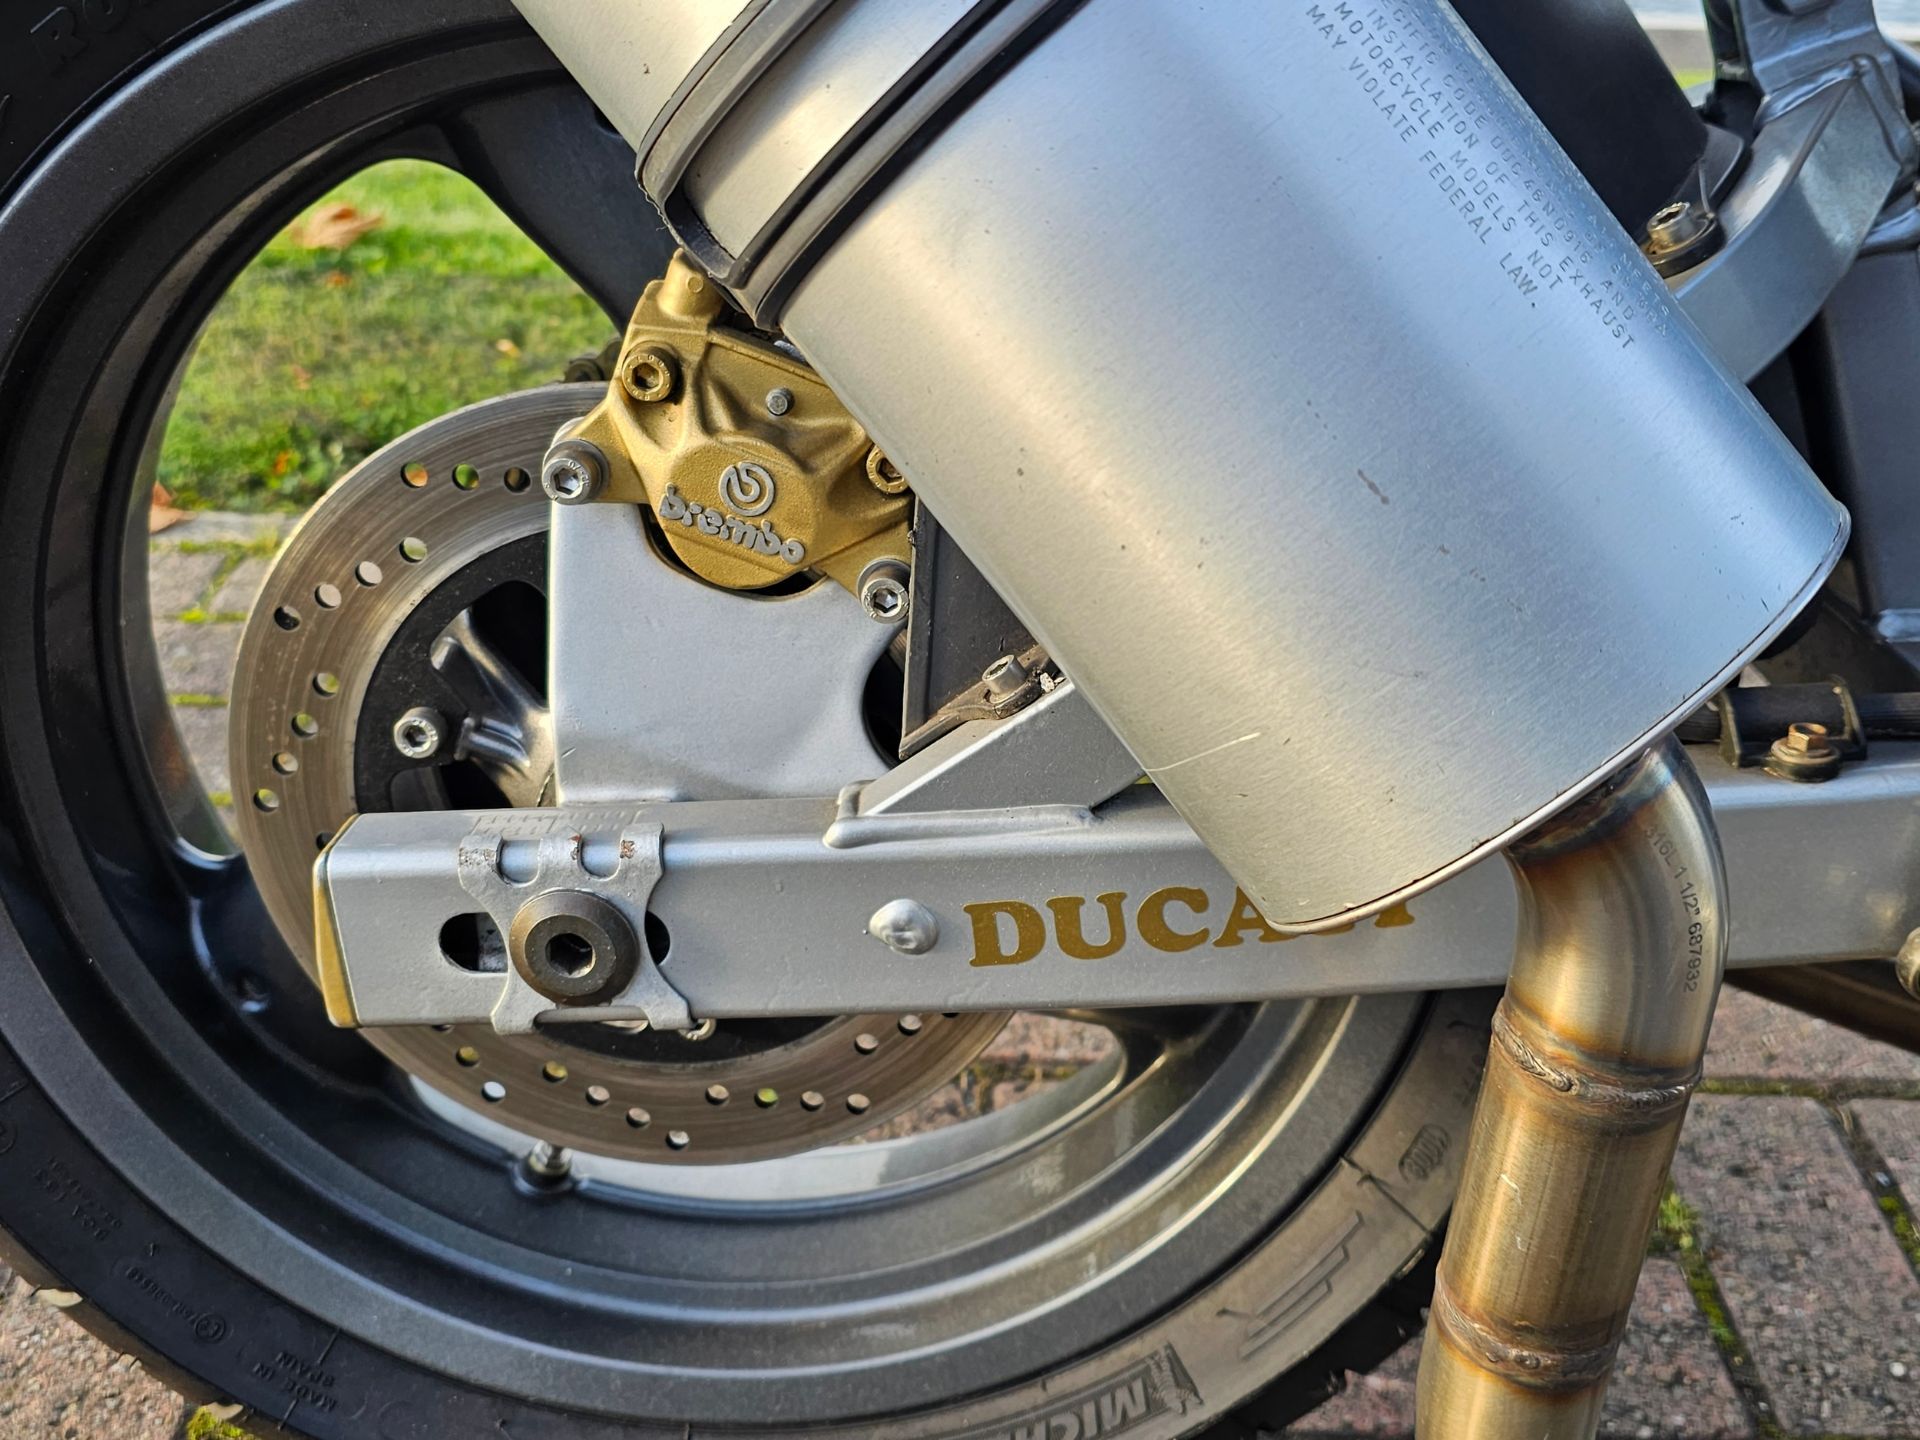 1998 Ducati 600SS, 600cc. Registration number R986 DVM. Frame number not found. Engine number not - Image 5 of 11